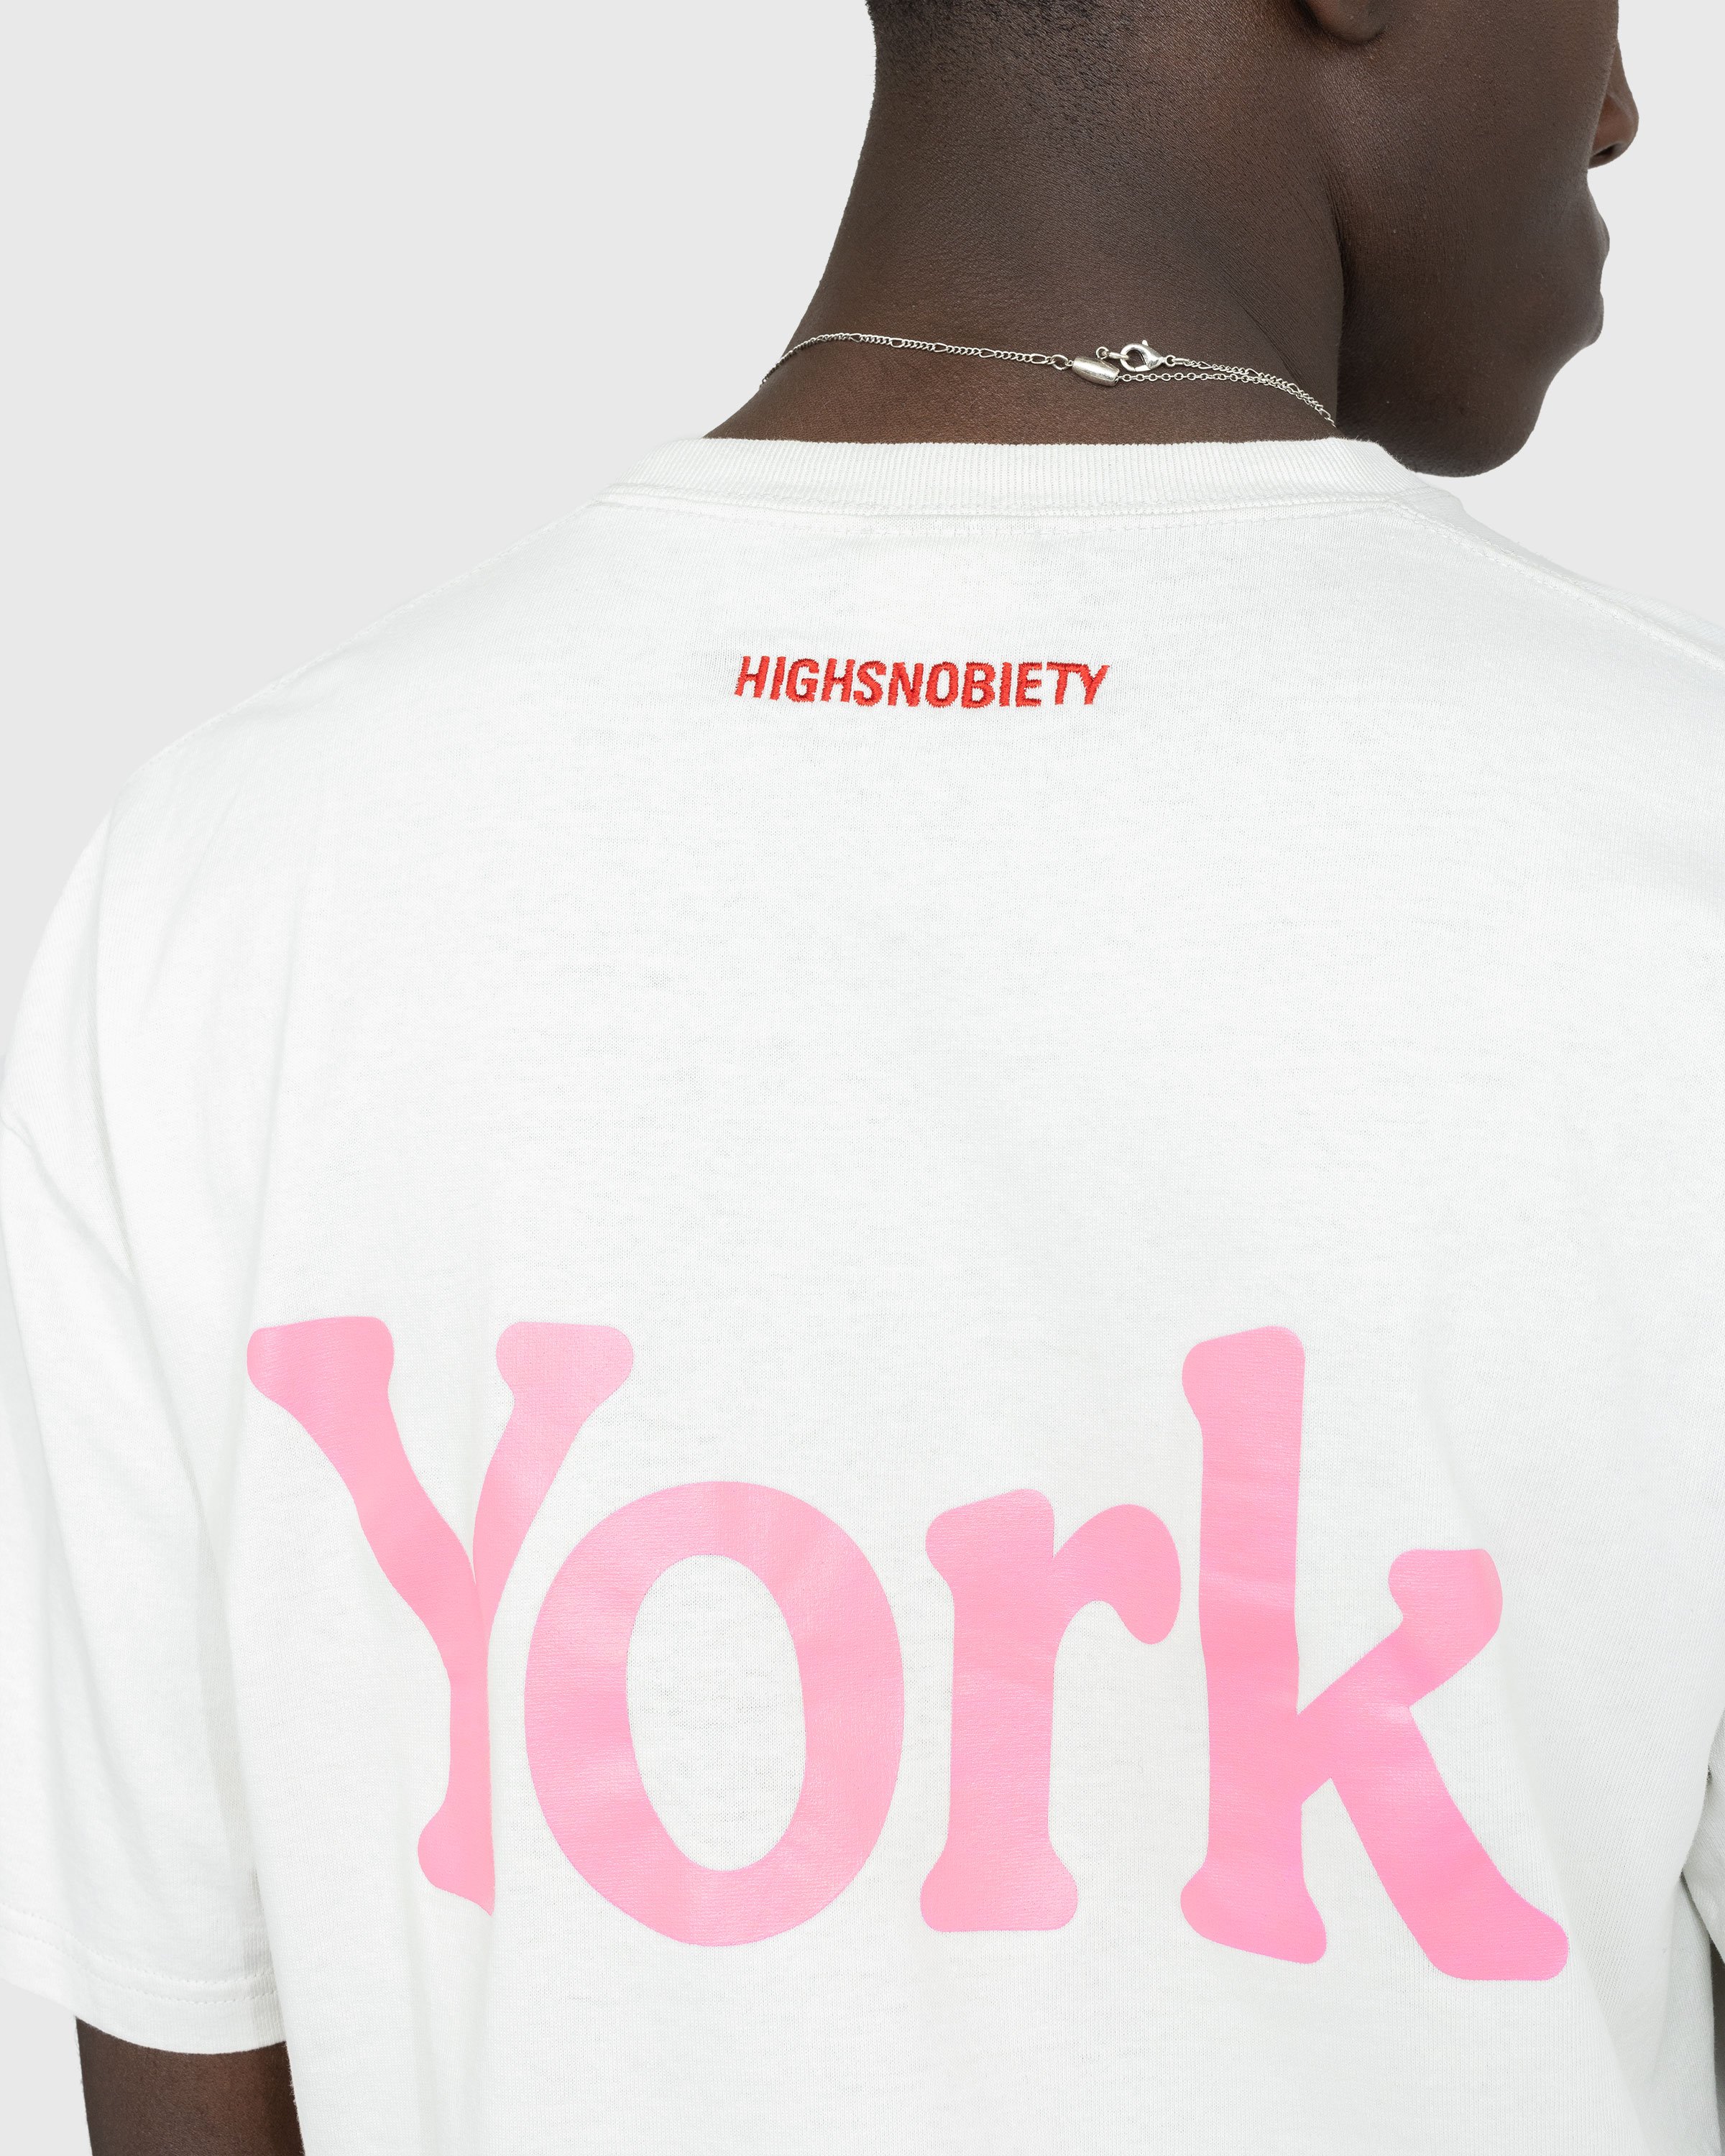 Highsnobiety - Neu York Light Grey T-Shirt - Clothing - Grey - Image 5